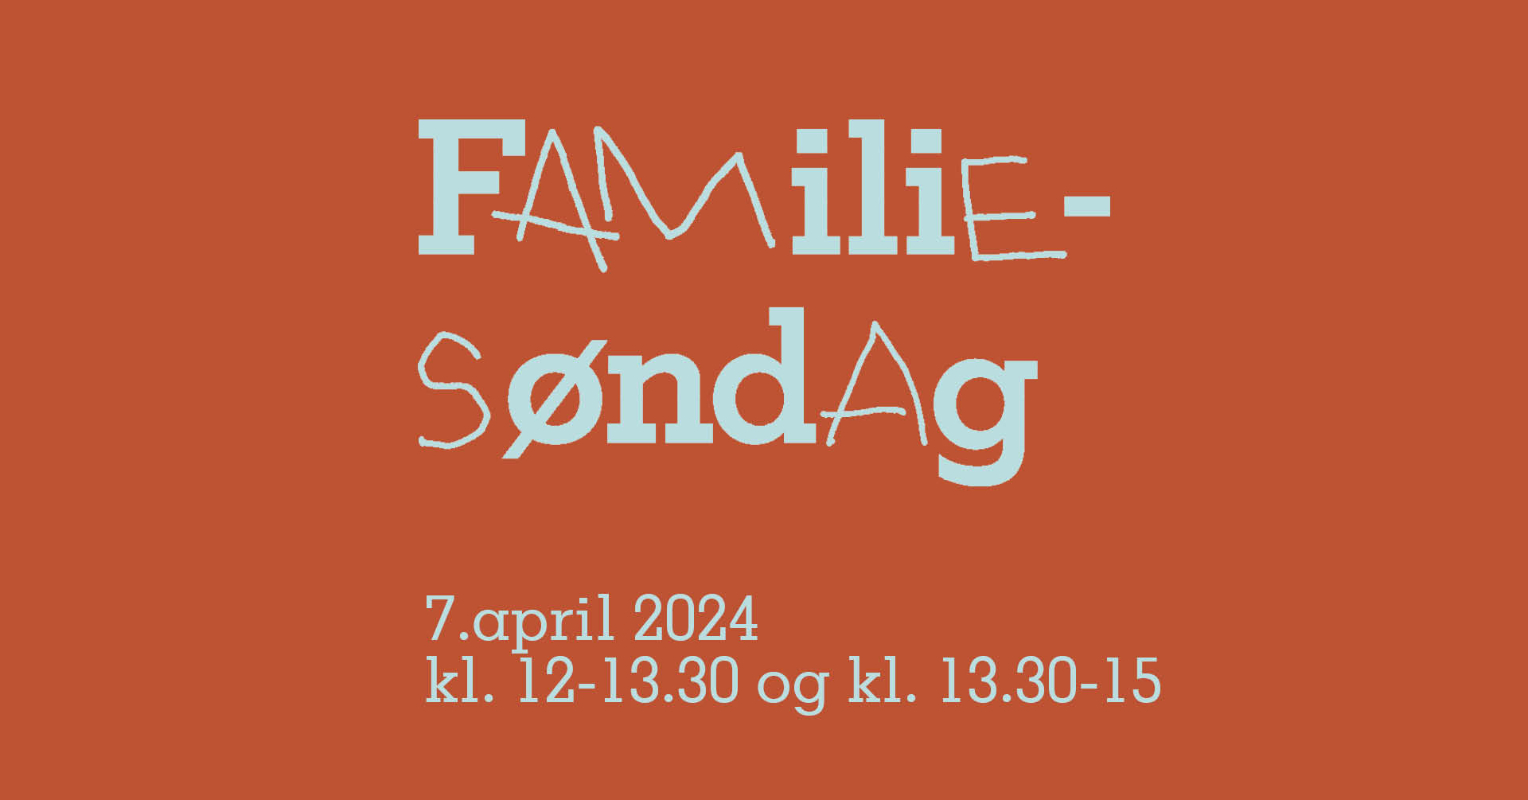 May be an image of text that says 'FAMiliE- SơndAg 7.april2024 7.april 2024 kl. 12-13.30 og kl. 13.30-15'